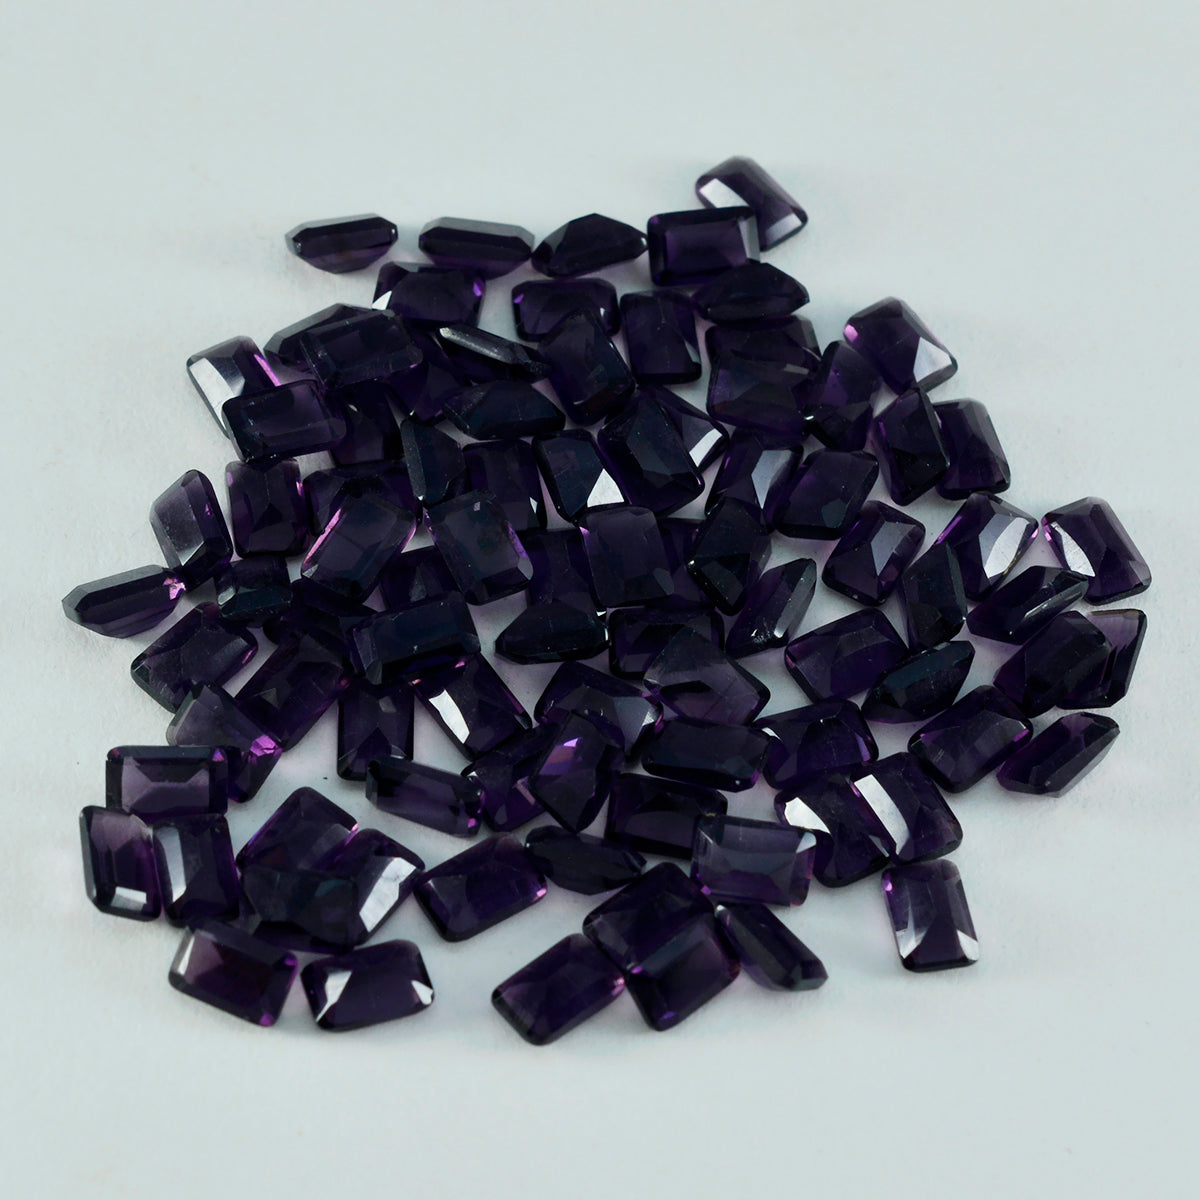 riyogems 1 шт. фиолетовый аметист cz граненый 6x8 мм восьмиугольной формы качество AAA свободный драгоценный камень